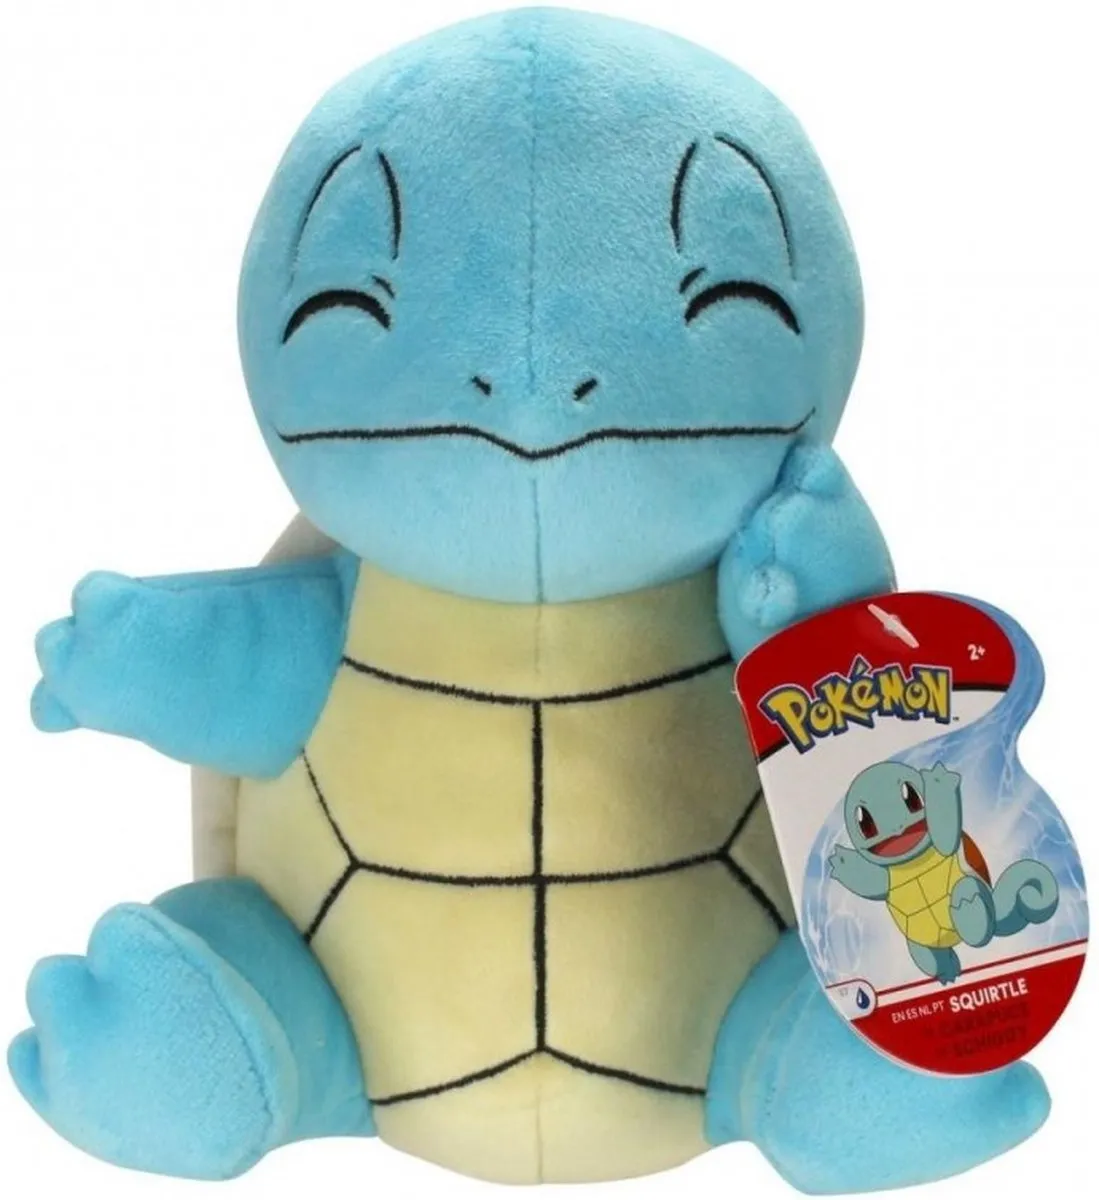 Pokémon - Pluche Knuffel - Squirtle Junior - 20 cm - Blauw speelgoed